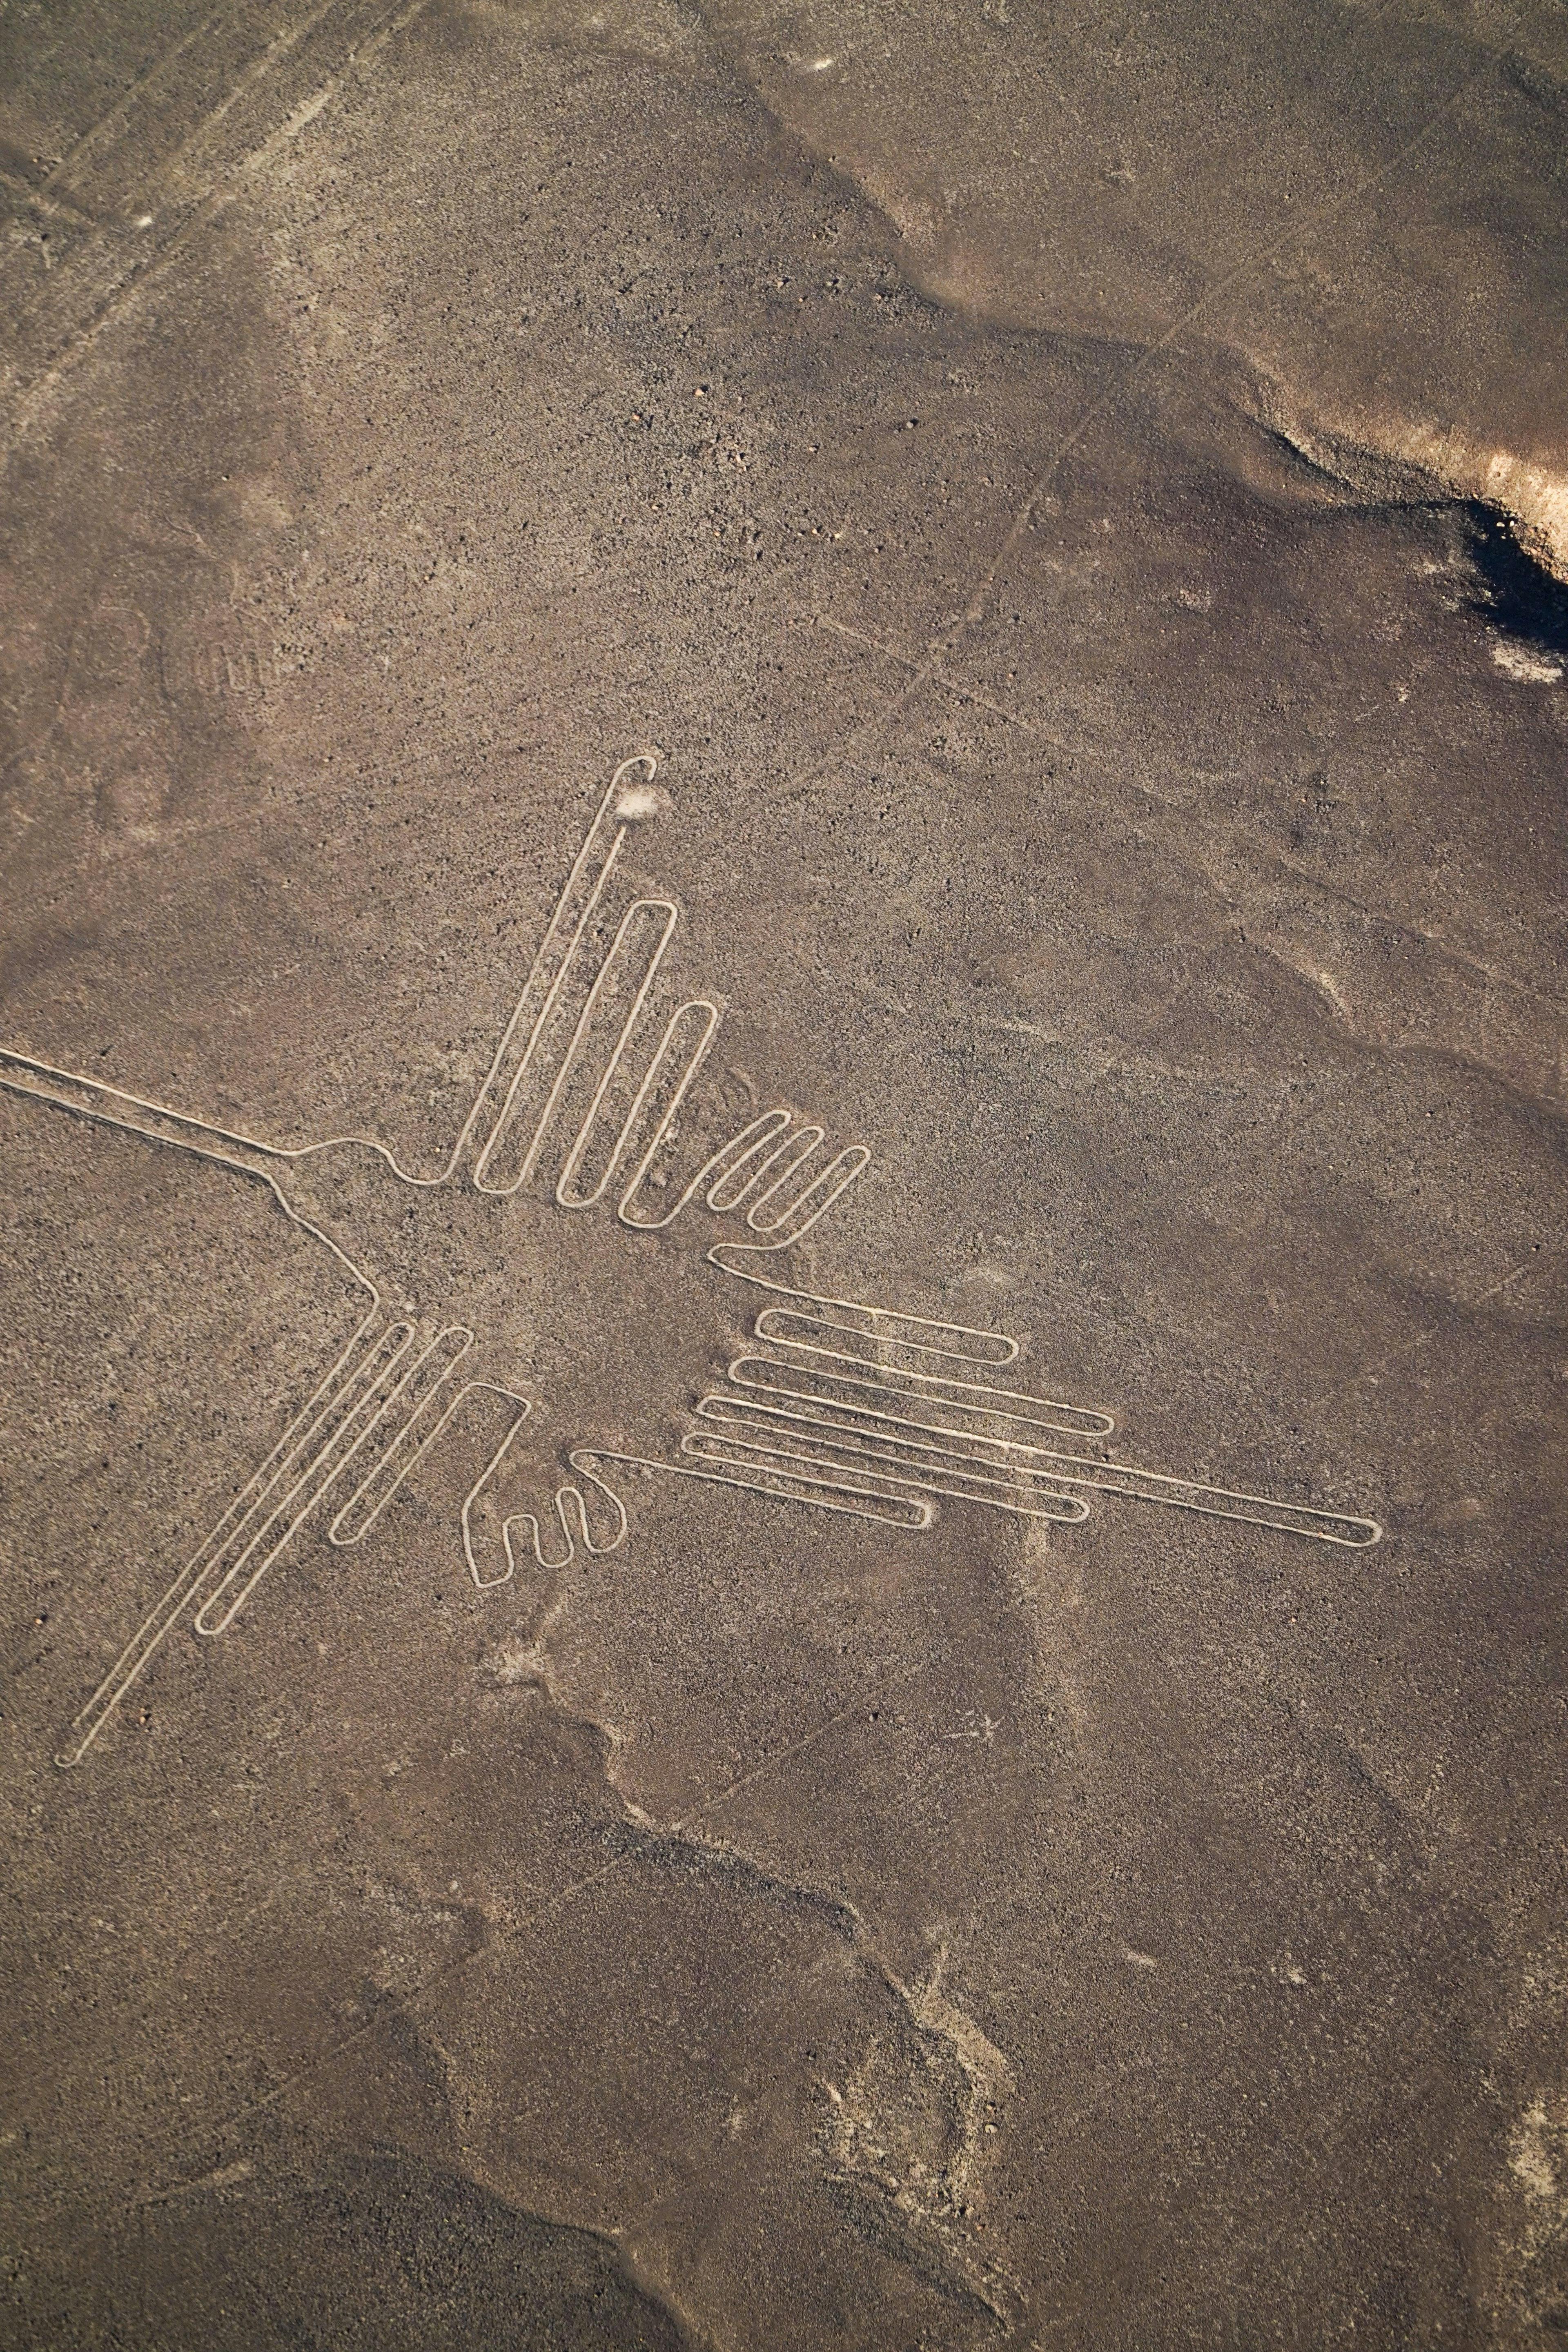 Geoglyph depicting a bird in Peru.